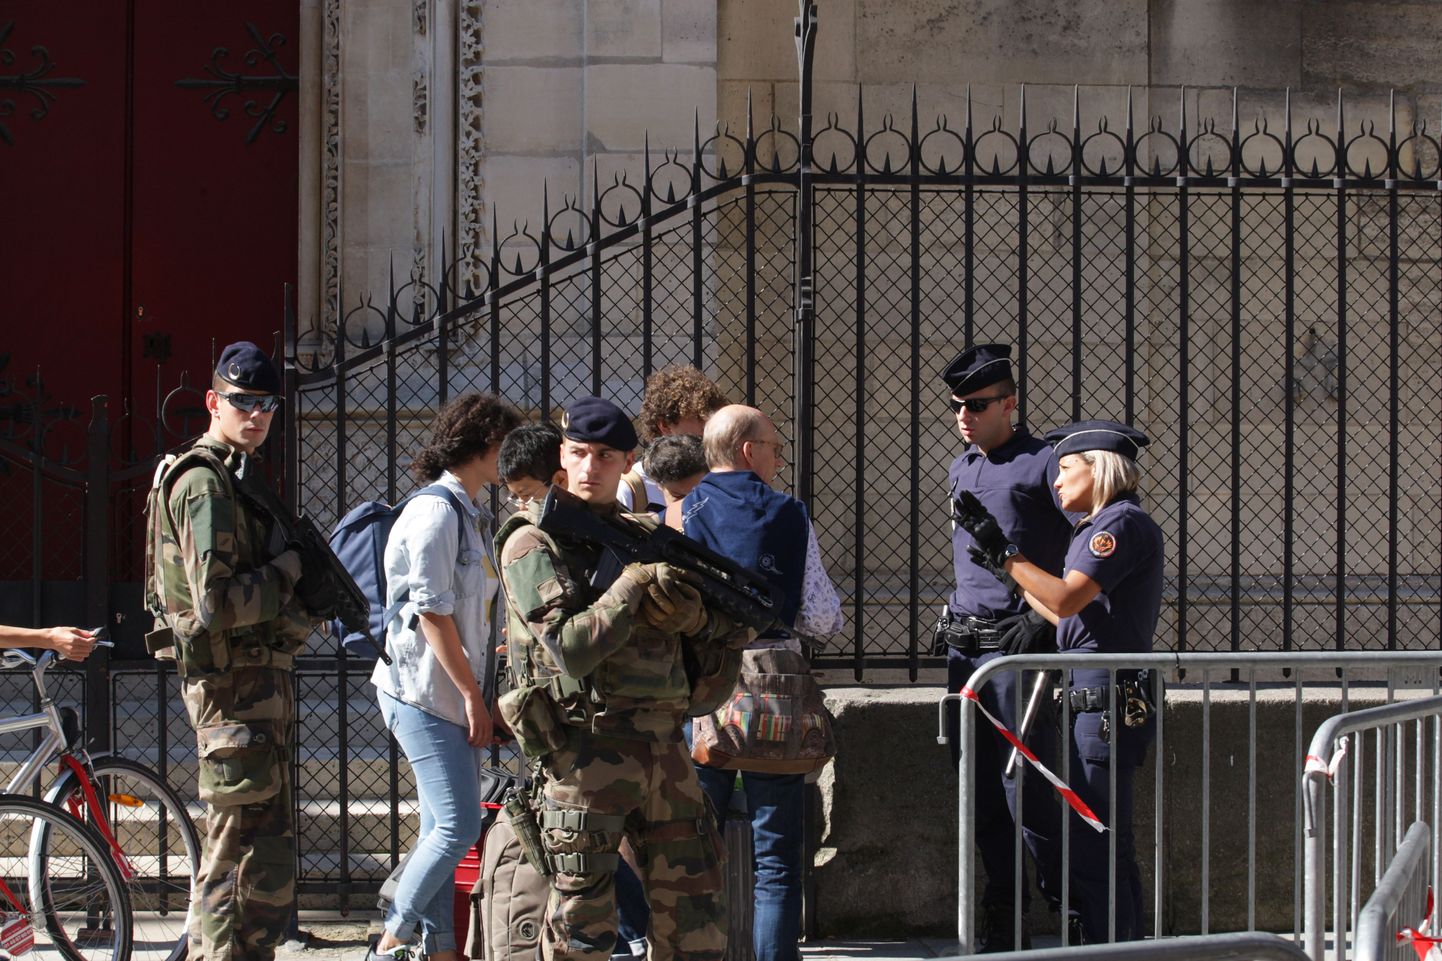 Prantsuse sõjaväelased ja politseinikud tänavatel valvamas.